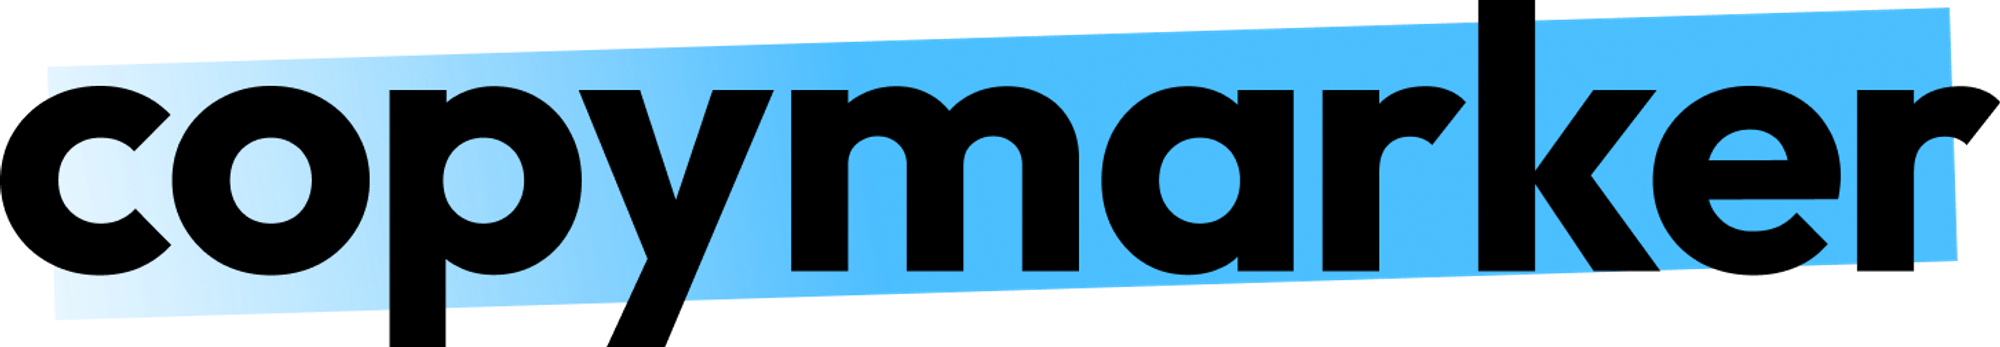 Modern logo design for copymarker.com